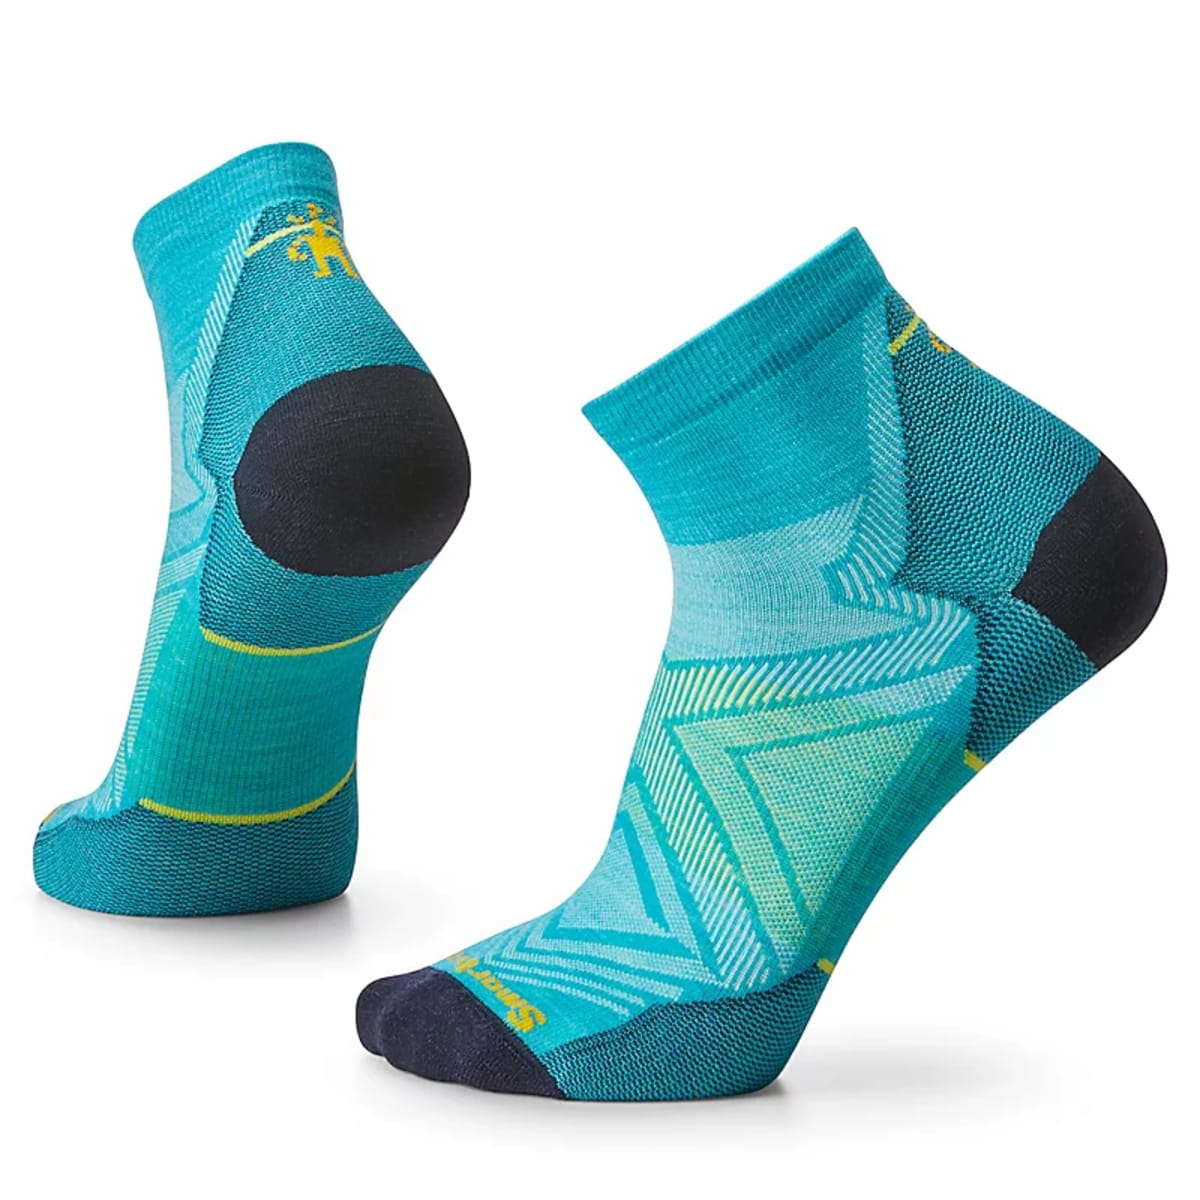 Hero Pro, Best Running Socks For Men, Workout Socks